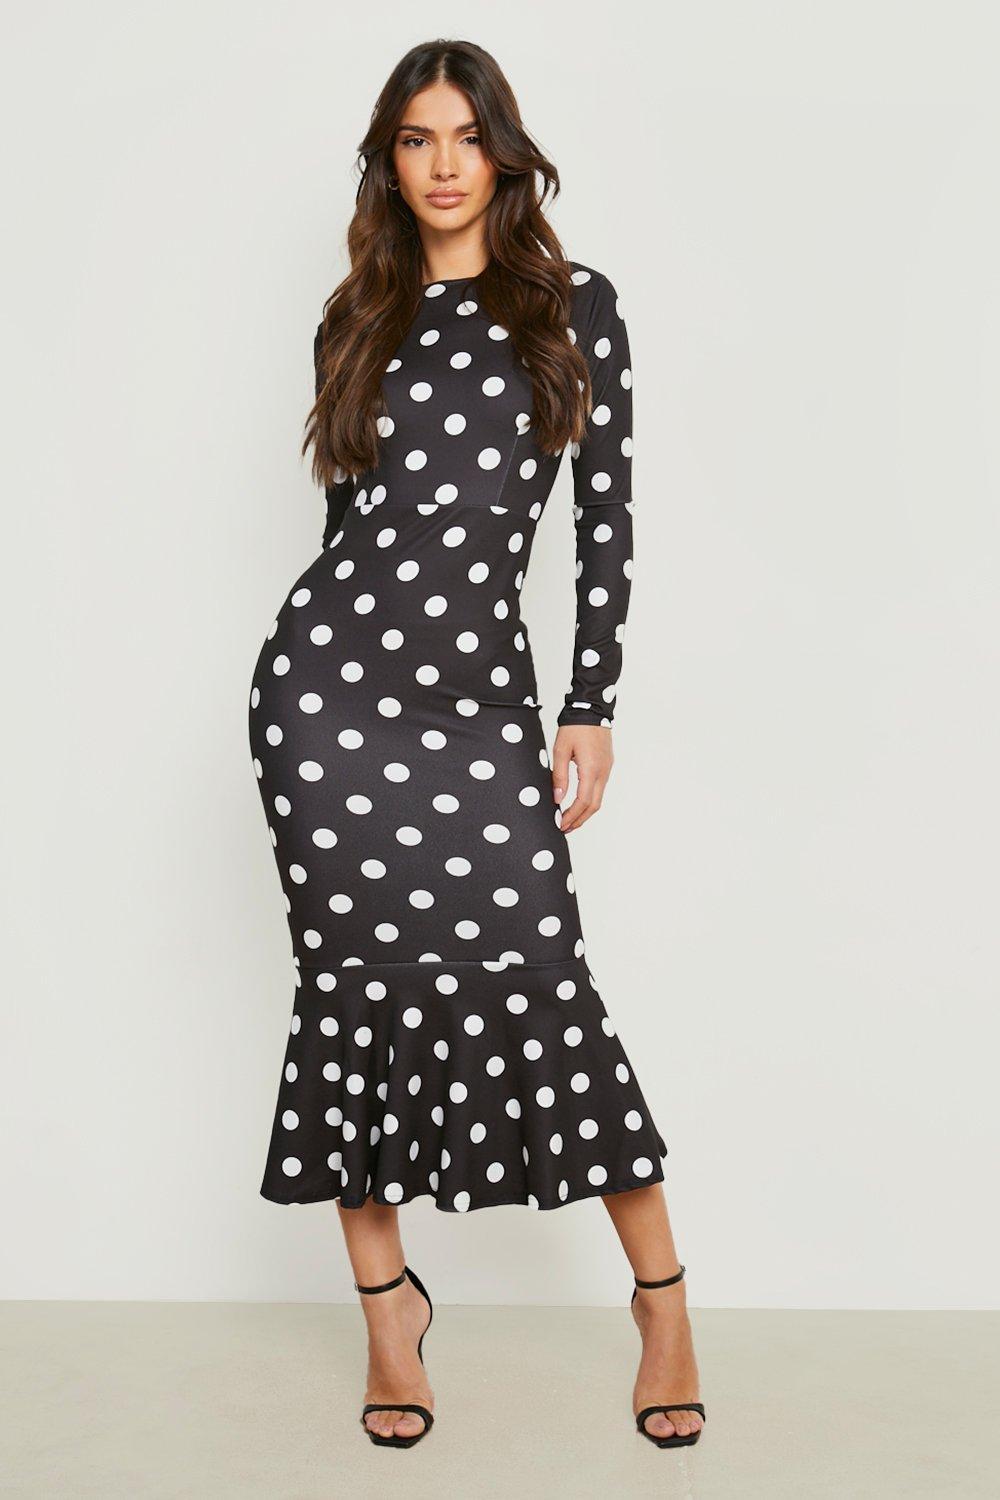 long sleeve white polka dot dress